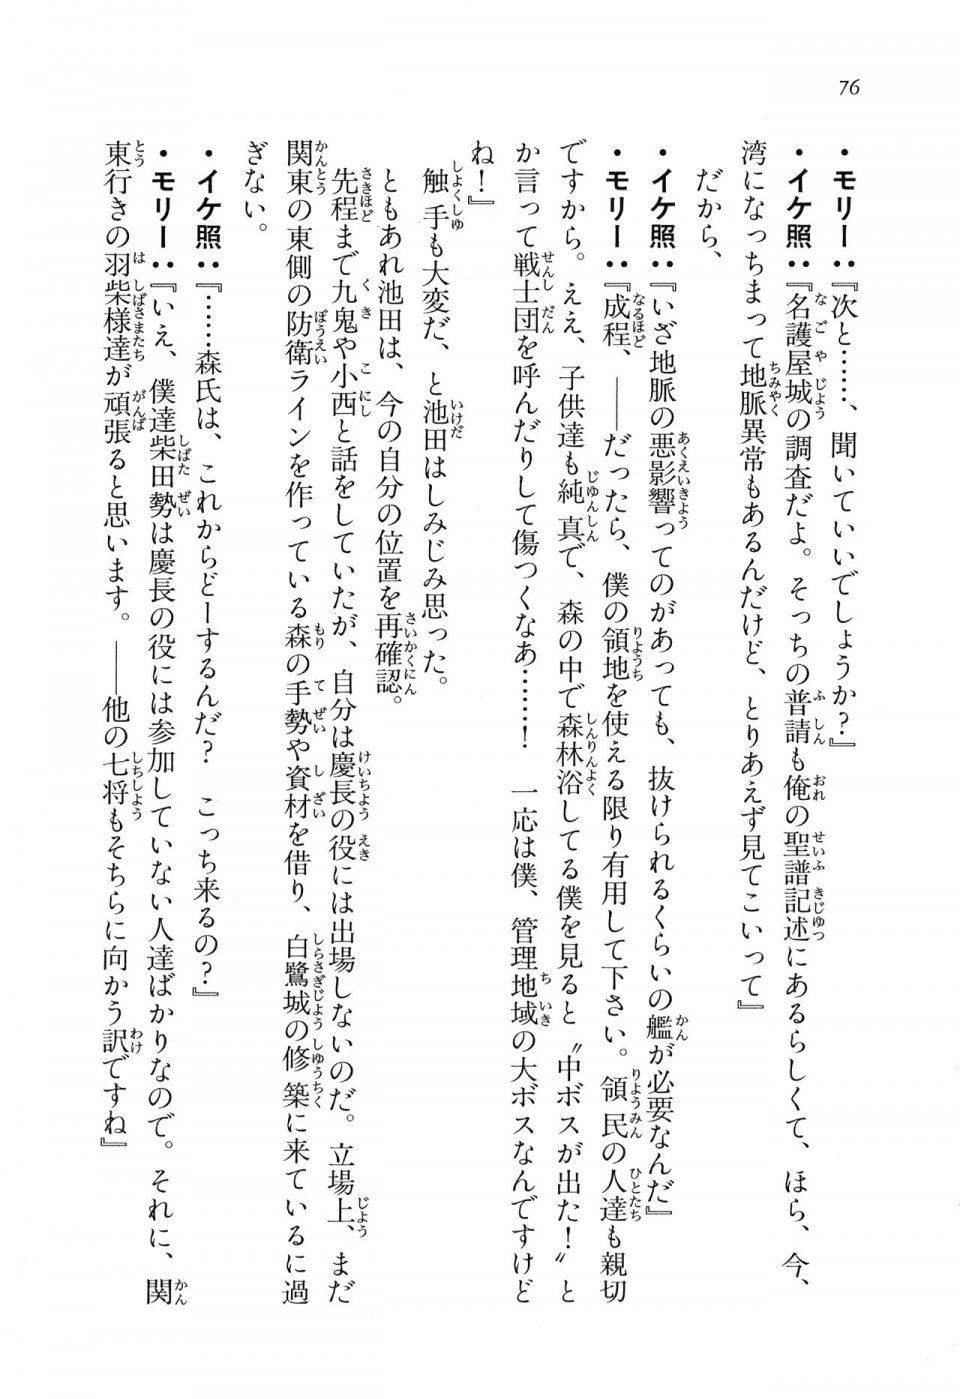 Kyoukai Senjou no Horizon LN Vol 16(7A) - Photo #76